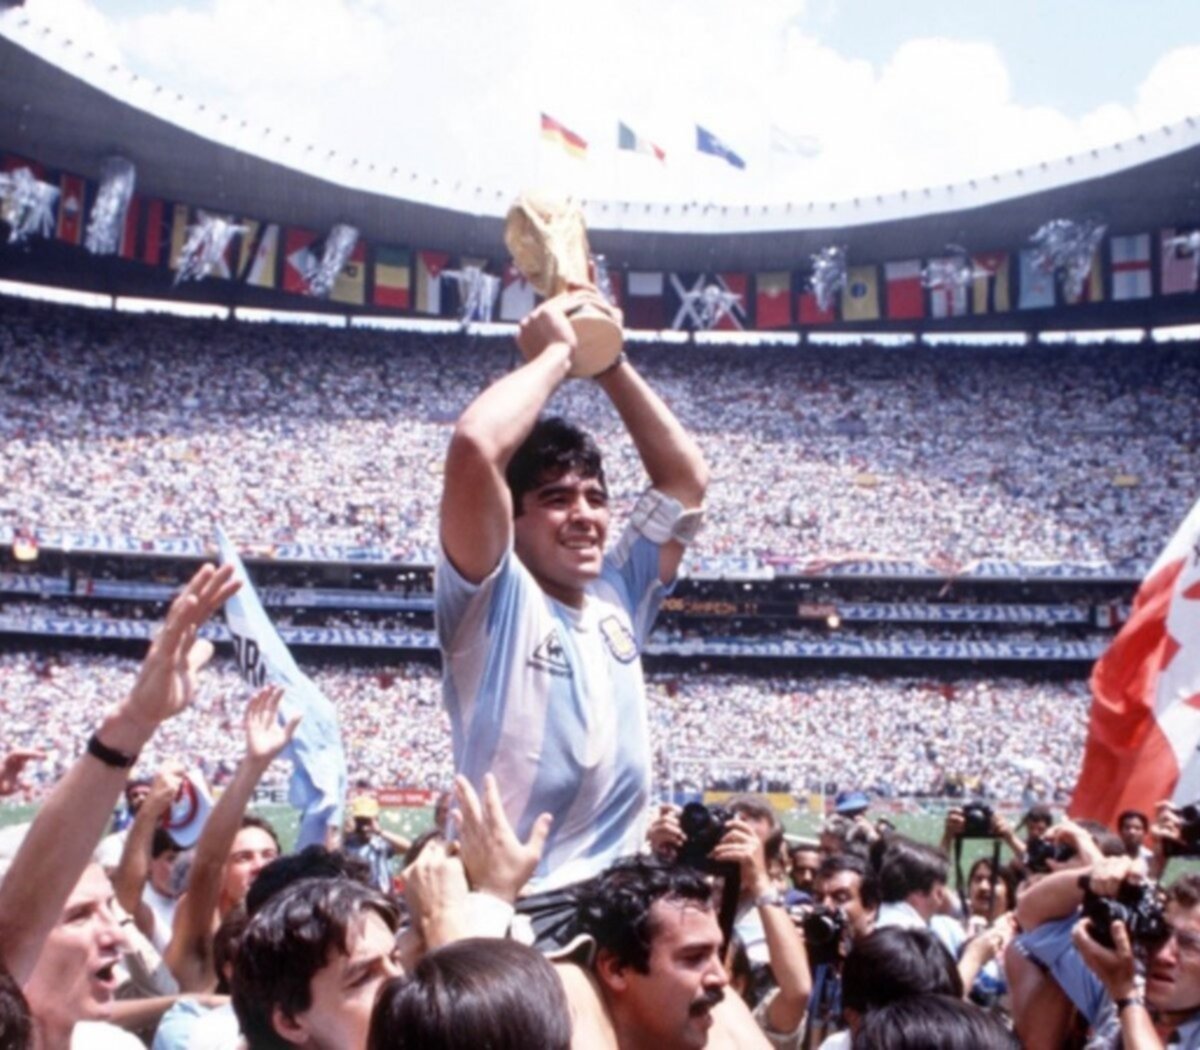 Un tesoro: cómo conseguir todos los ejemplares históricos del Mundial de México ‘86, que consagró campeón a Argentina